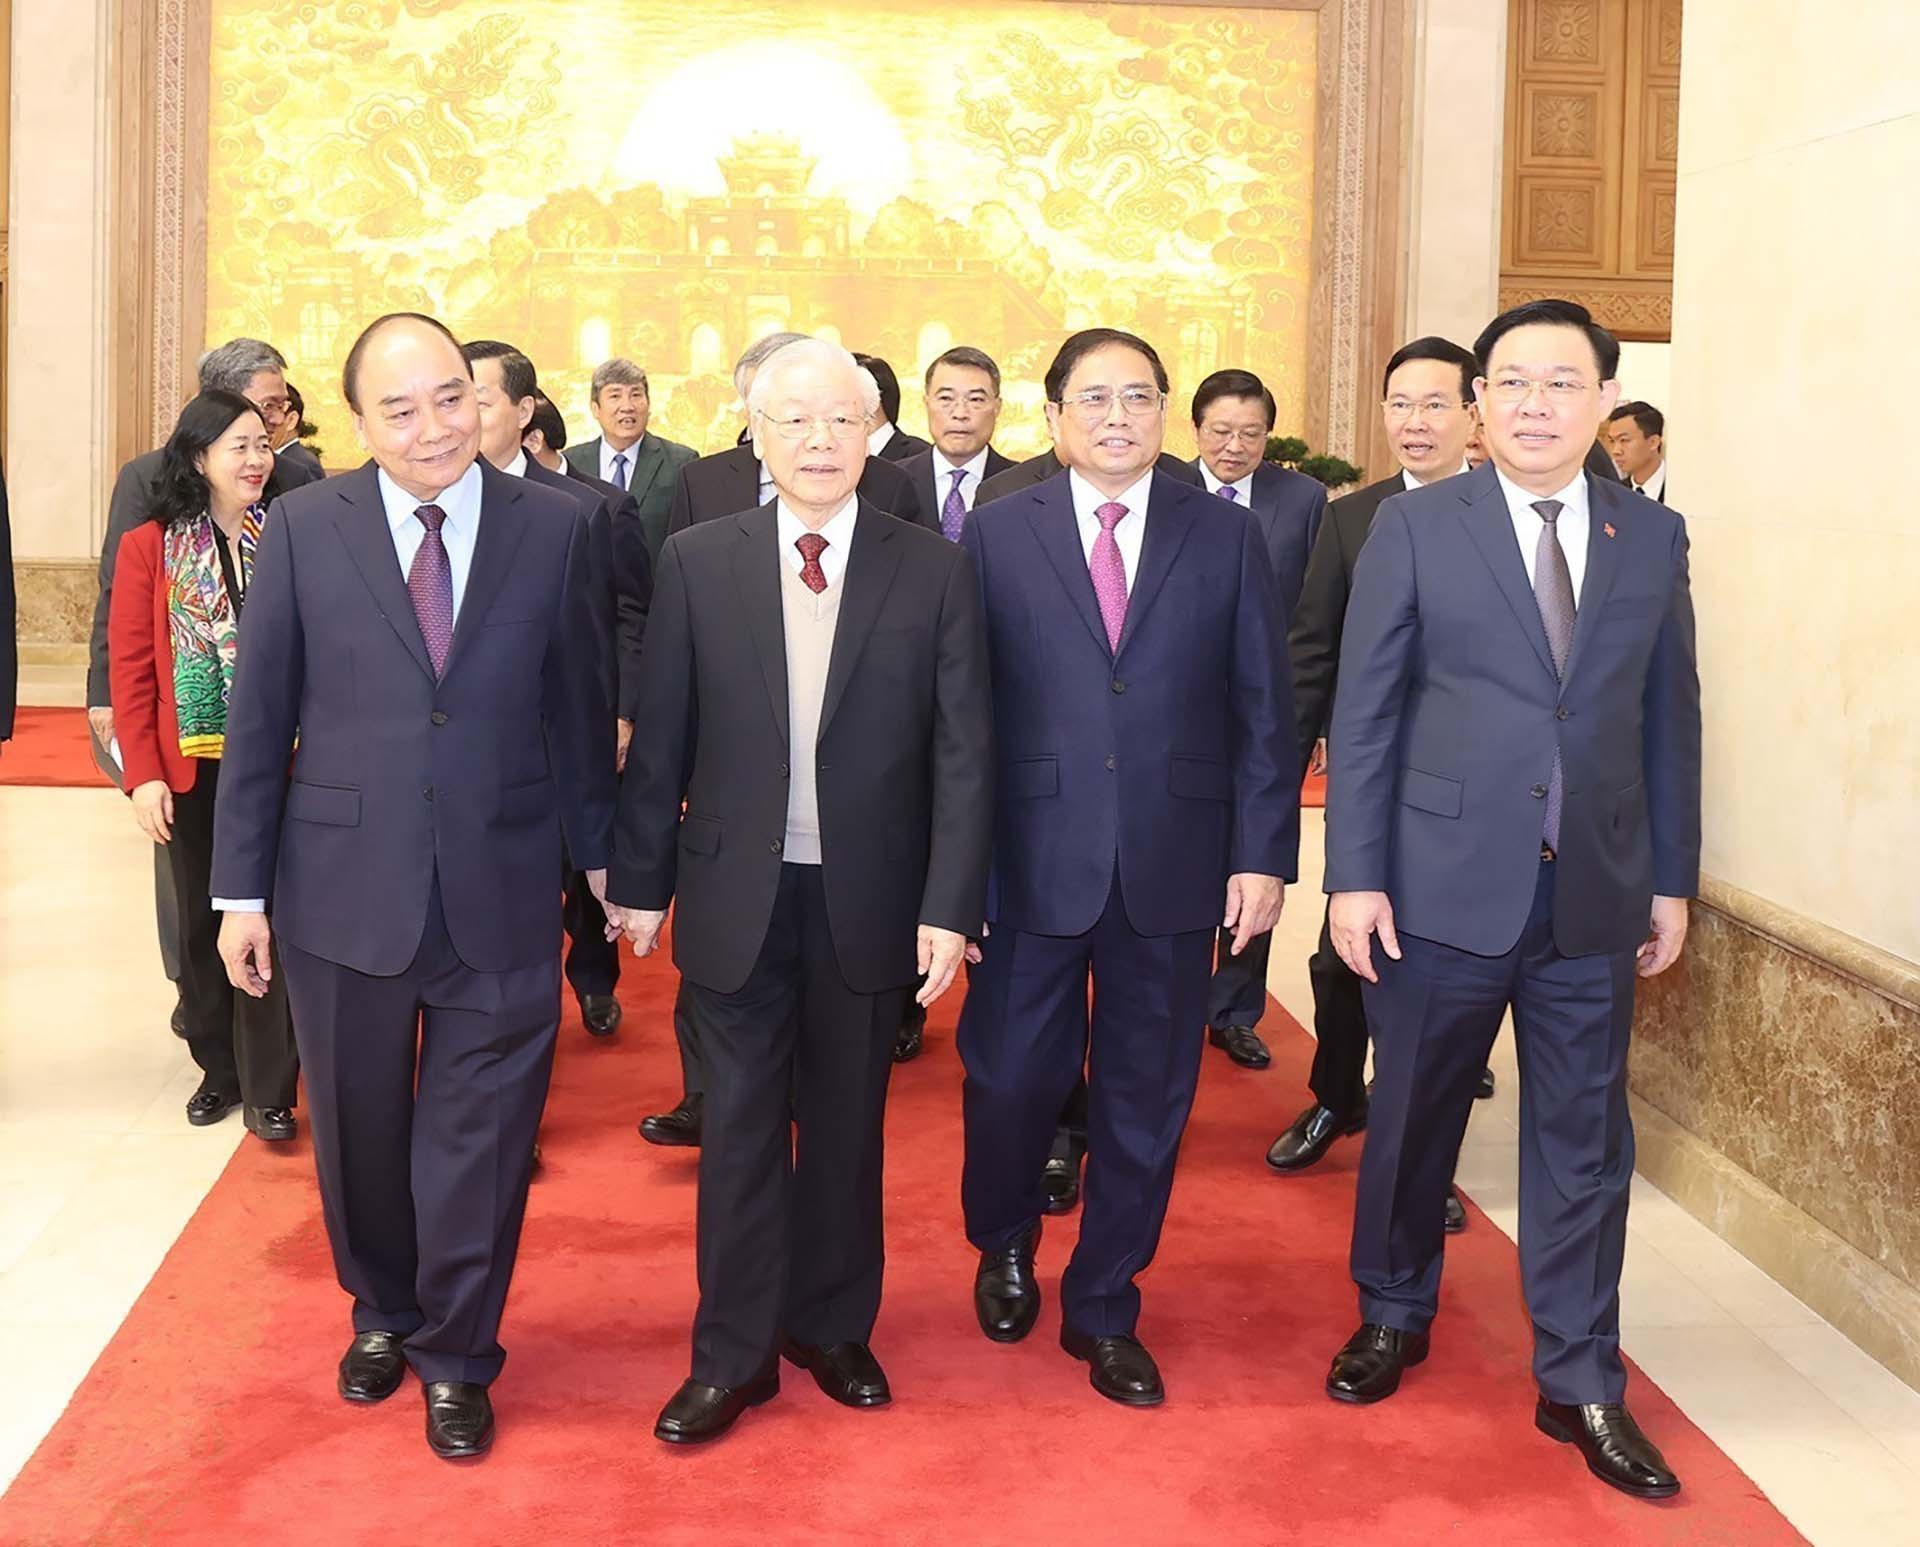 Tổng Bí thư Nguyễn Phú Trọng cùng các đồng chí lãnh đạo Đảng, Nhà nước và đại biểu đến dự hội nghị. (Nguồn: TTXVN)